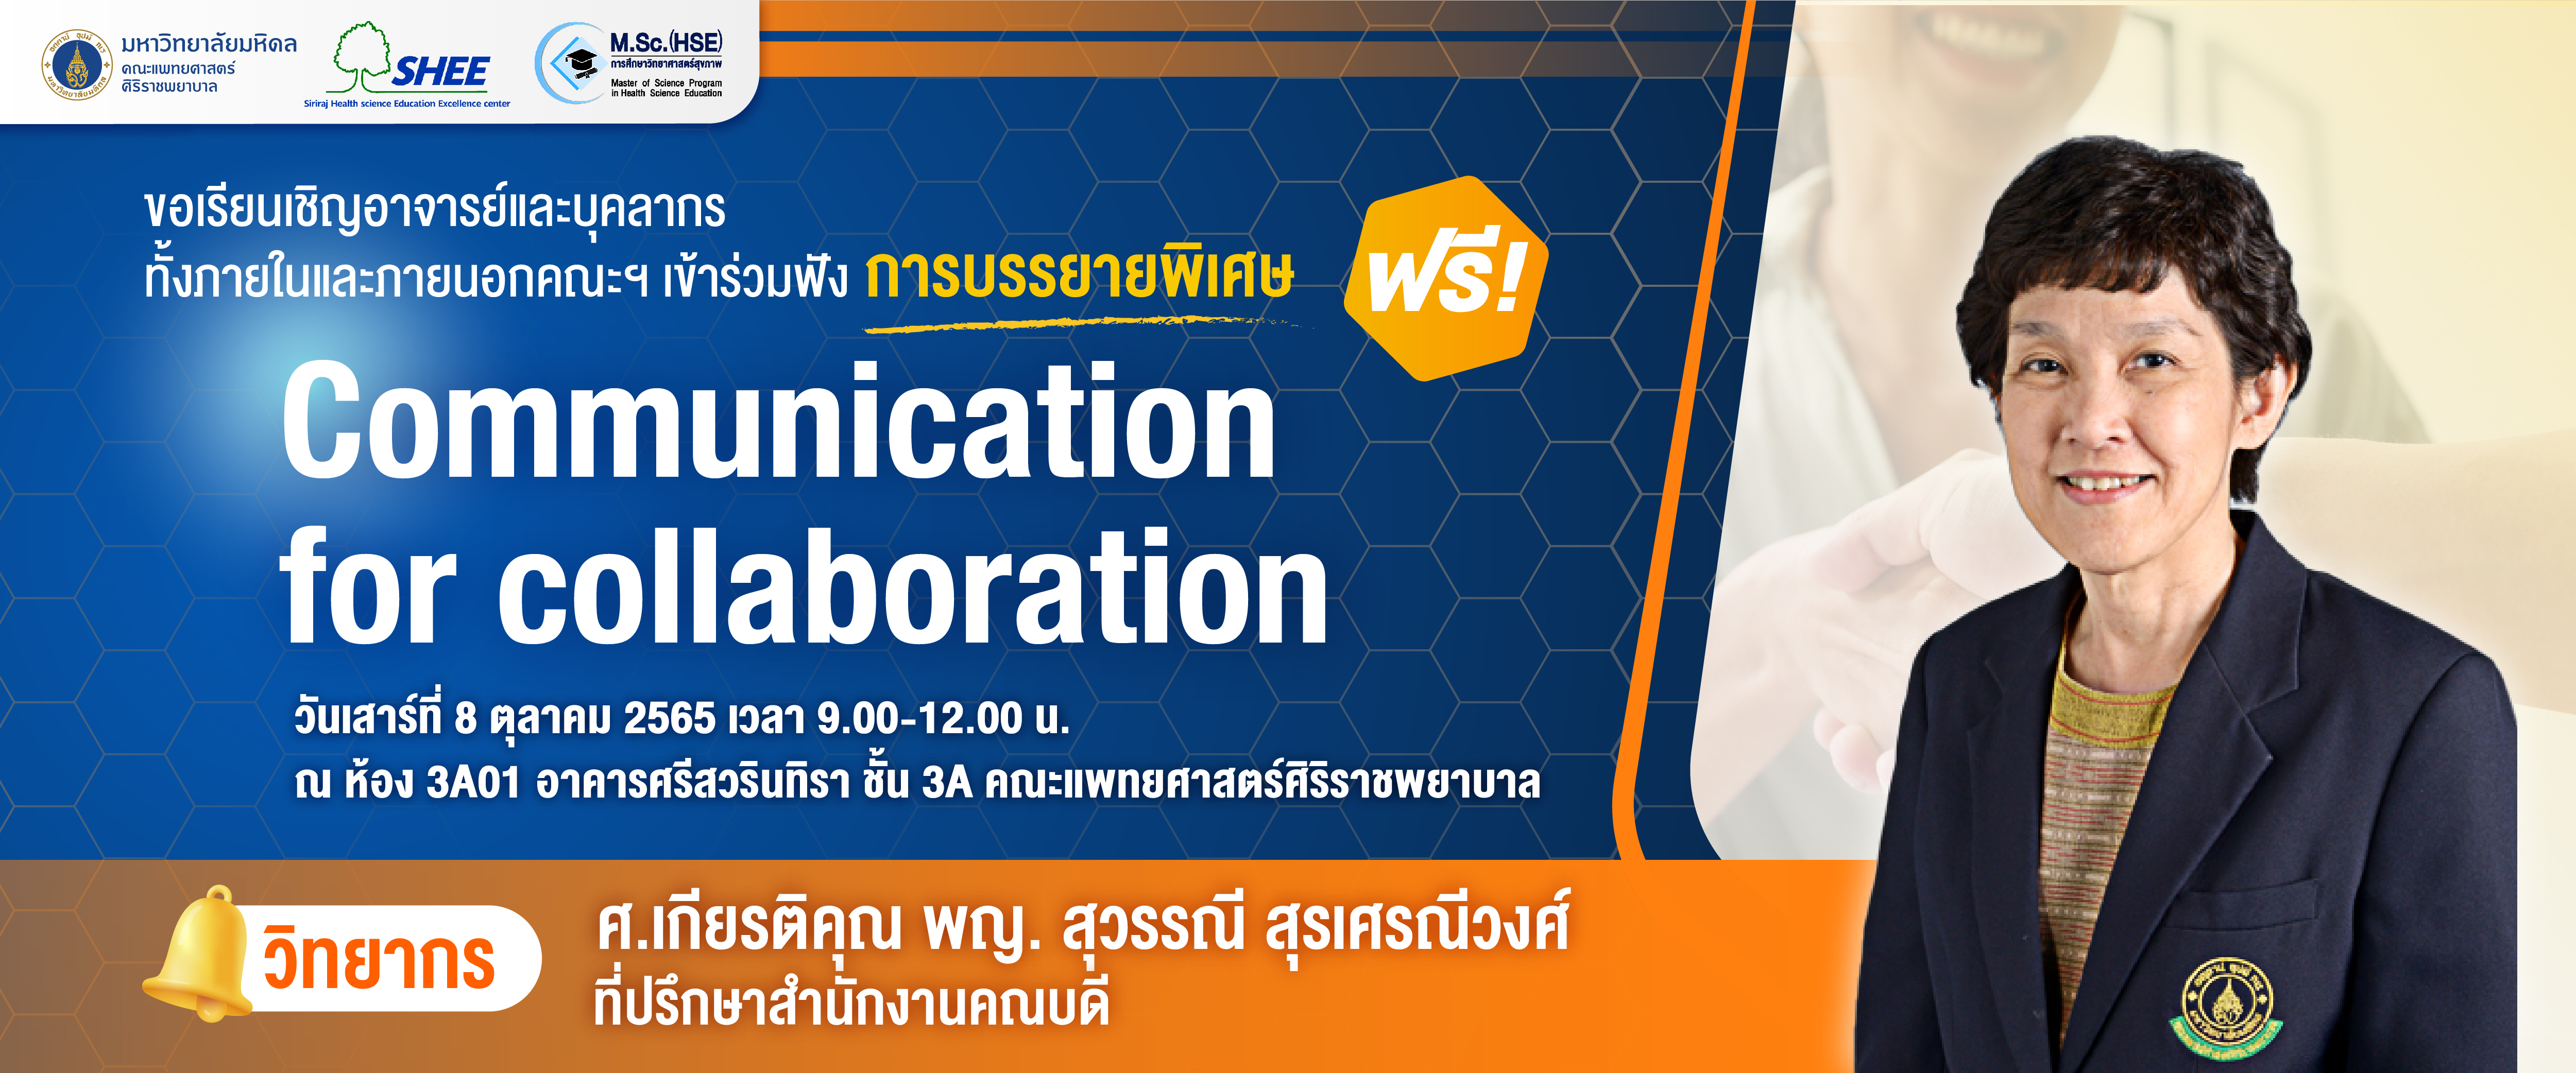 การบรรยายพิเศษ เรื่อง Communication for Collaboration ประจำปี 2565 